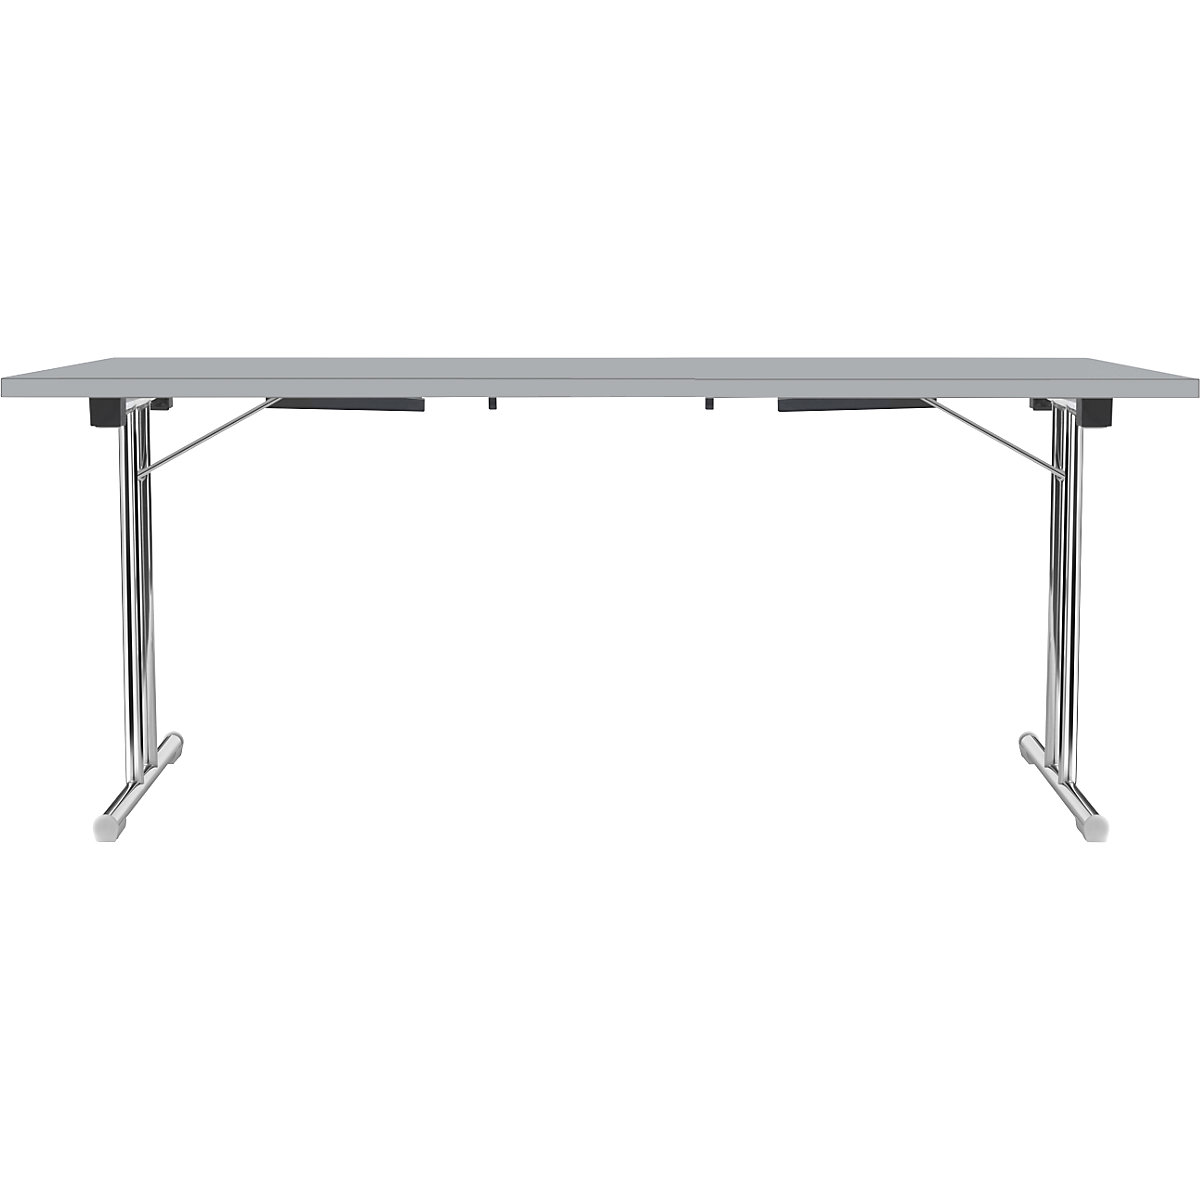 Tavolo pieghevole con basamento a T doppio, telaio in tubo tondo d'acciaio, cromato, grigio chiaro/grigio chiaro, largh. x prof. 1800 x 800 mm-17